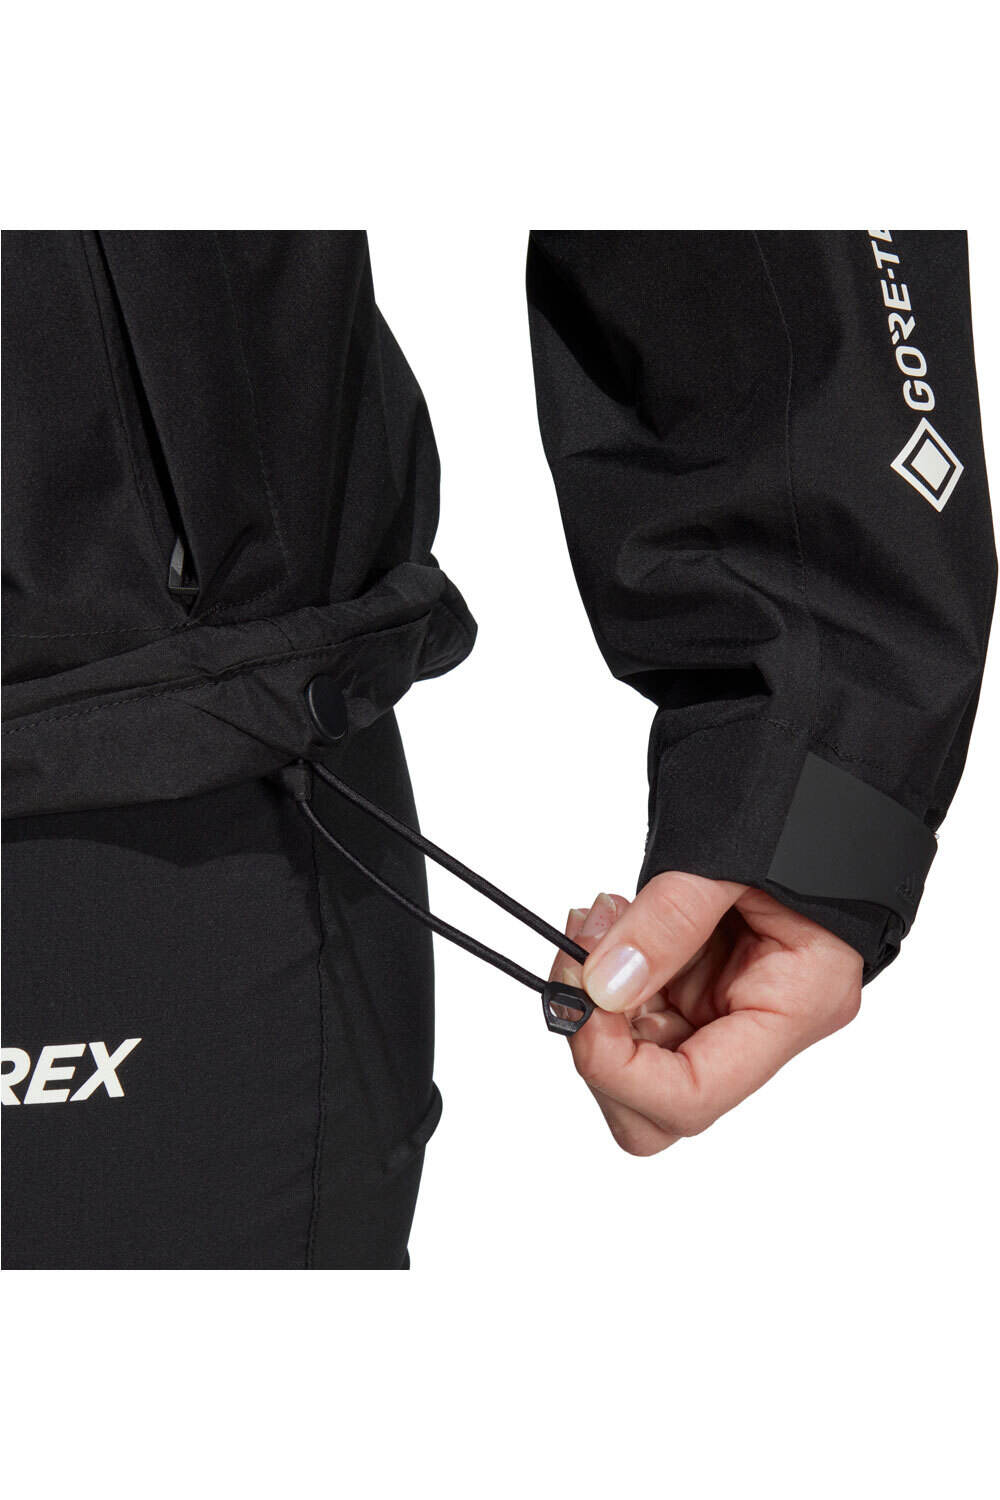 adidas chaqueta impermeable mujer Terrex Xperior GORE-TEX Paclite Rain 03